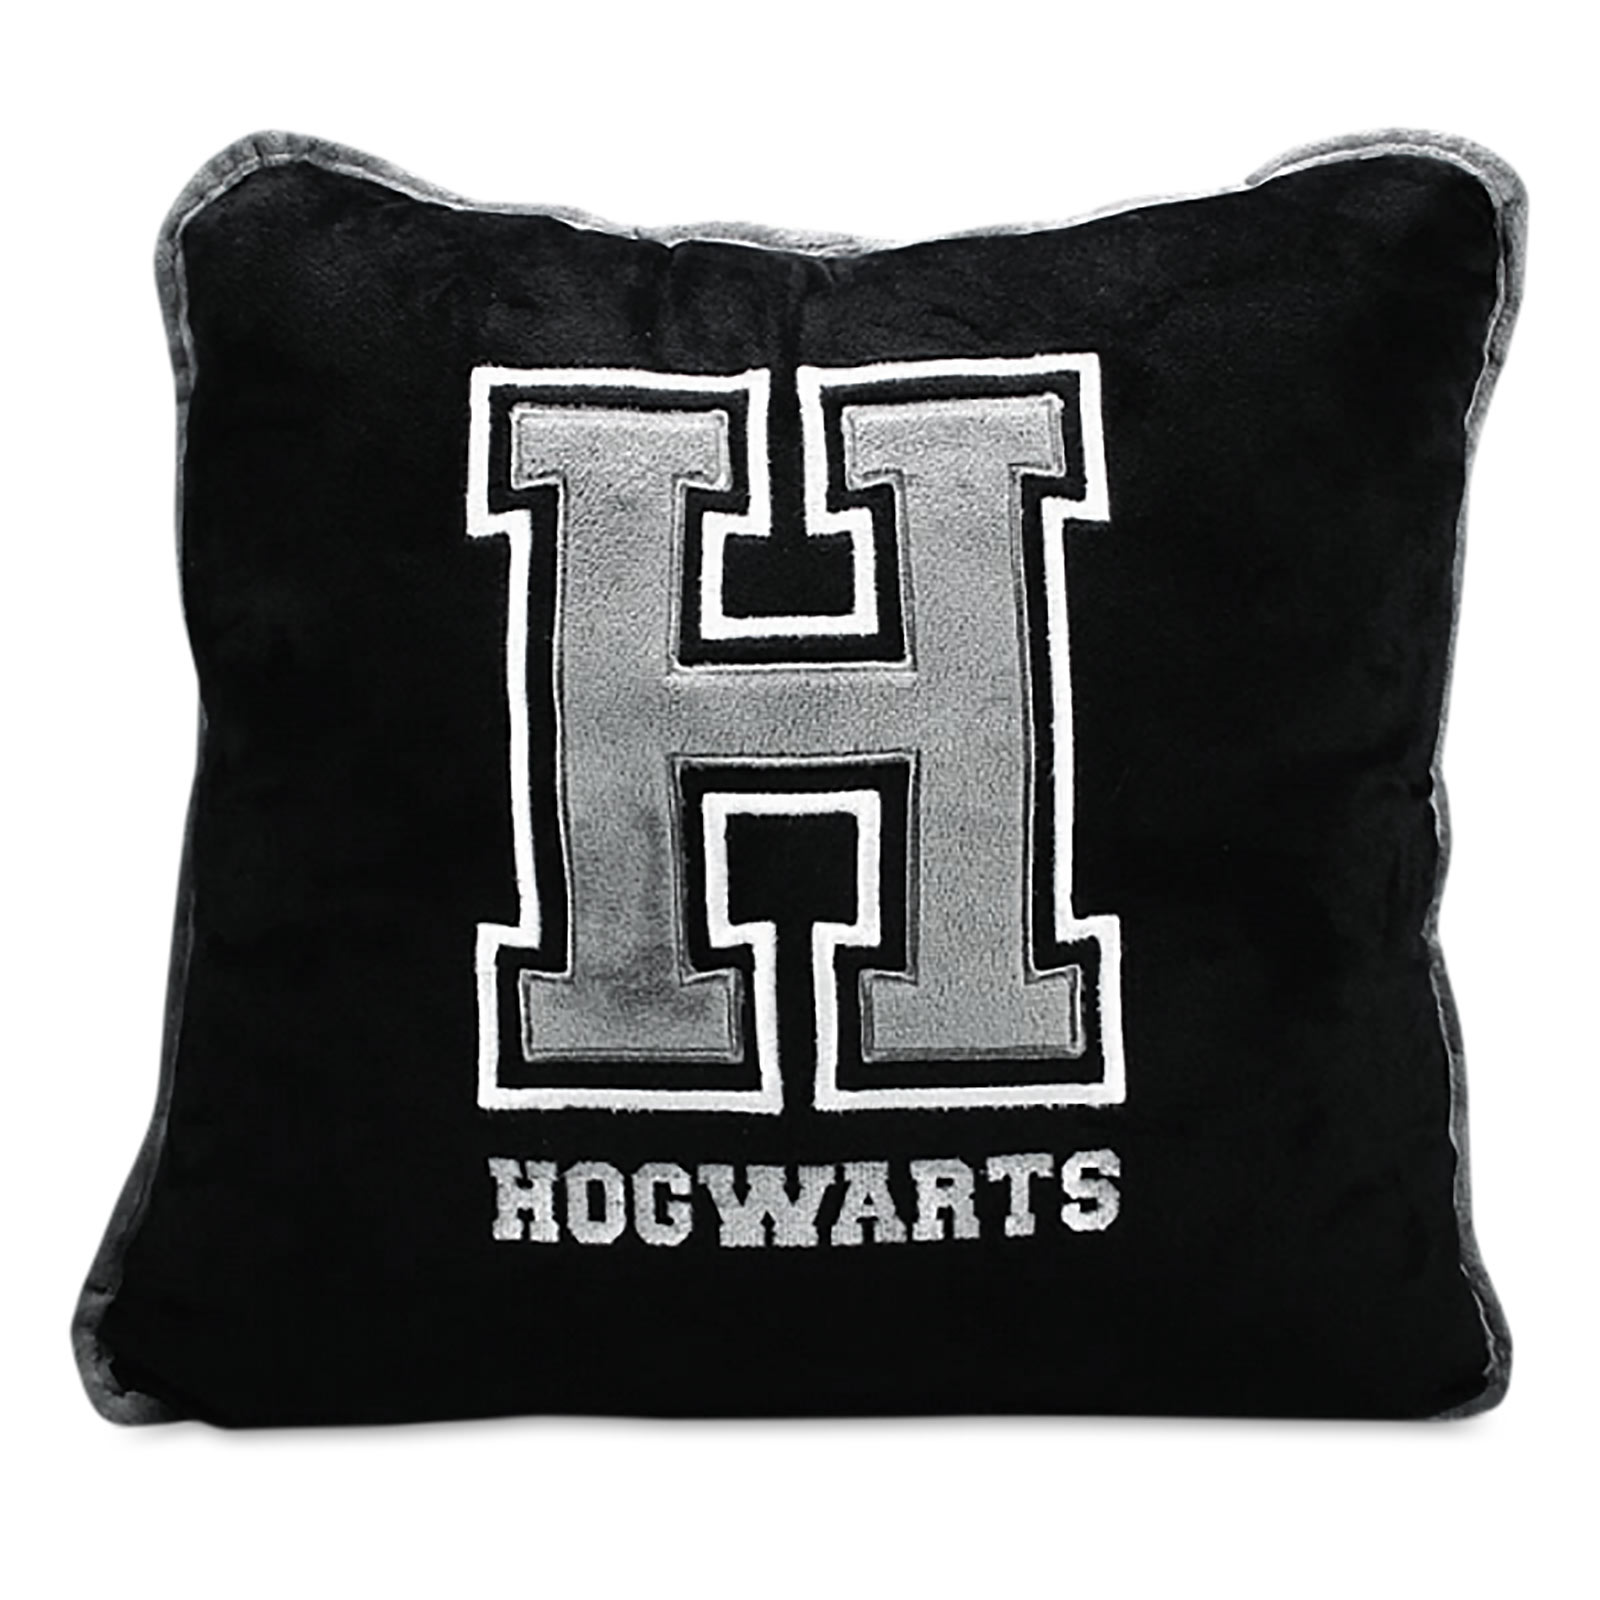 Harry Potter - Hogwarts Cushion